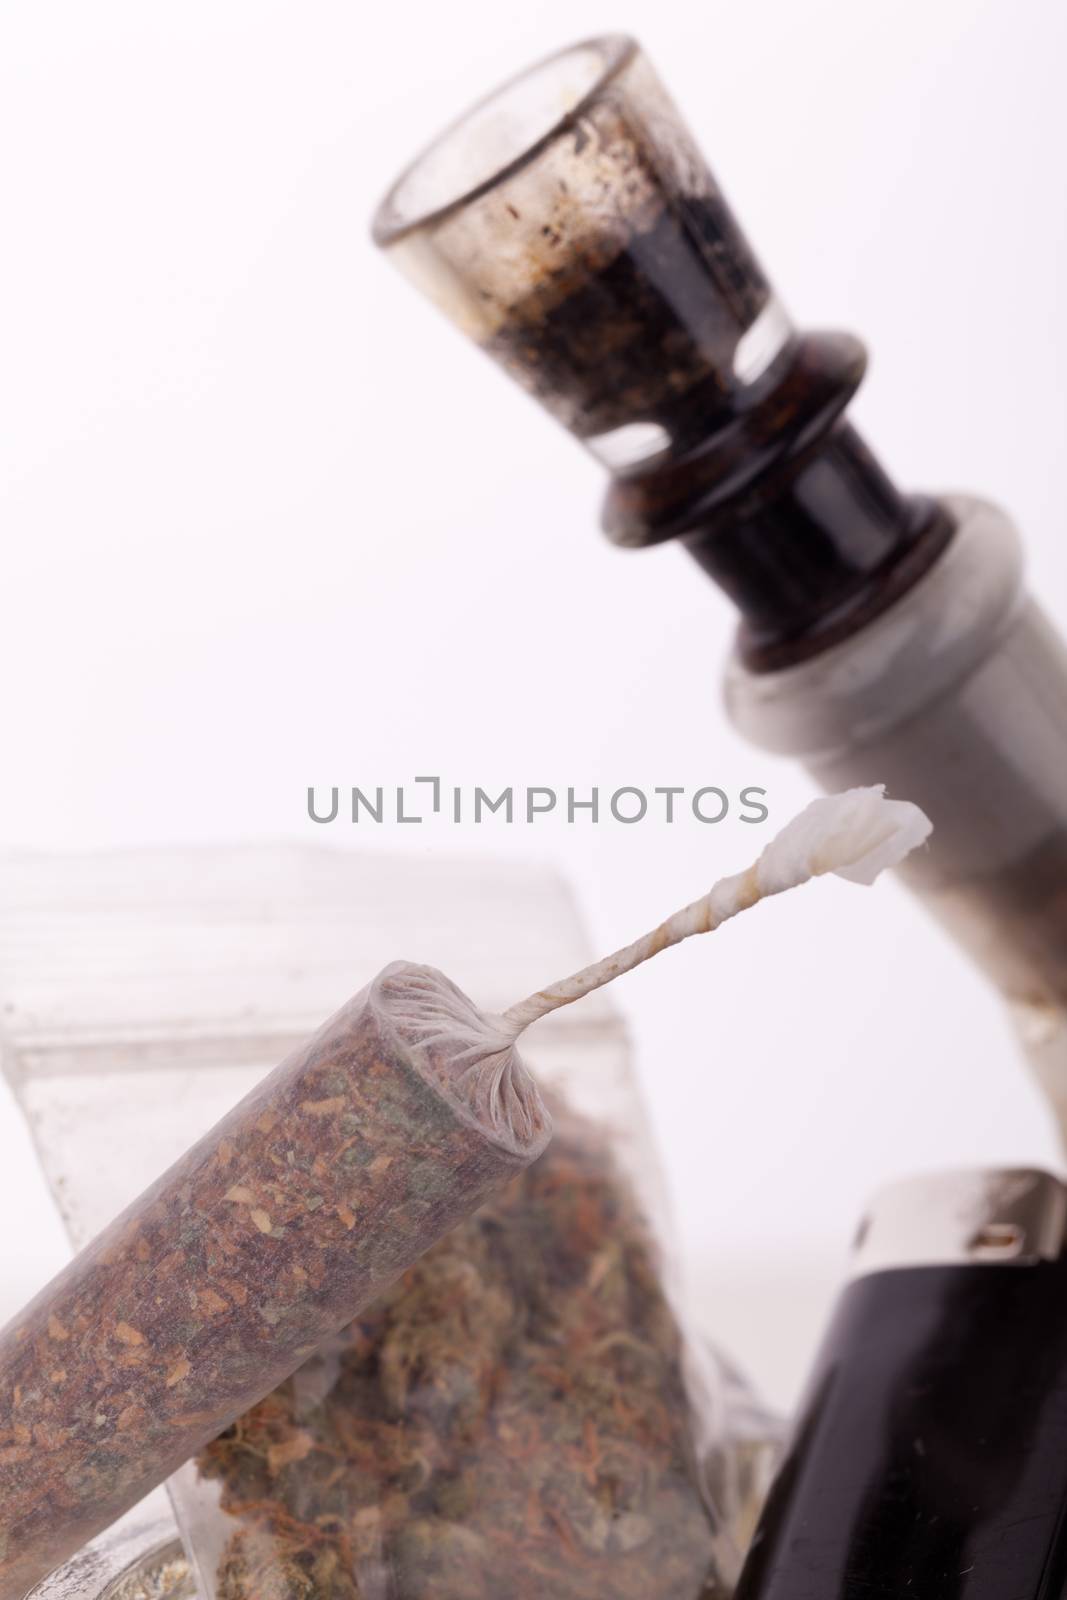 Close up of marijuana and smoking paraphernalia by juniart